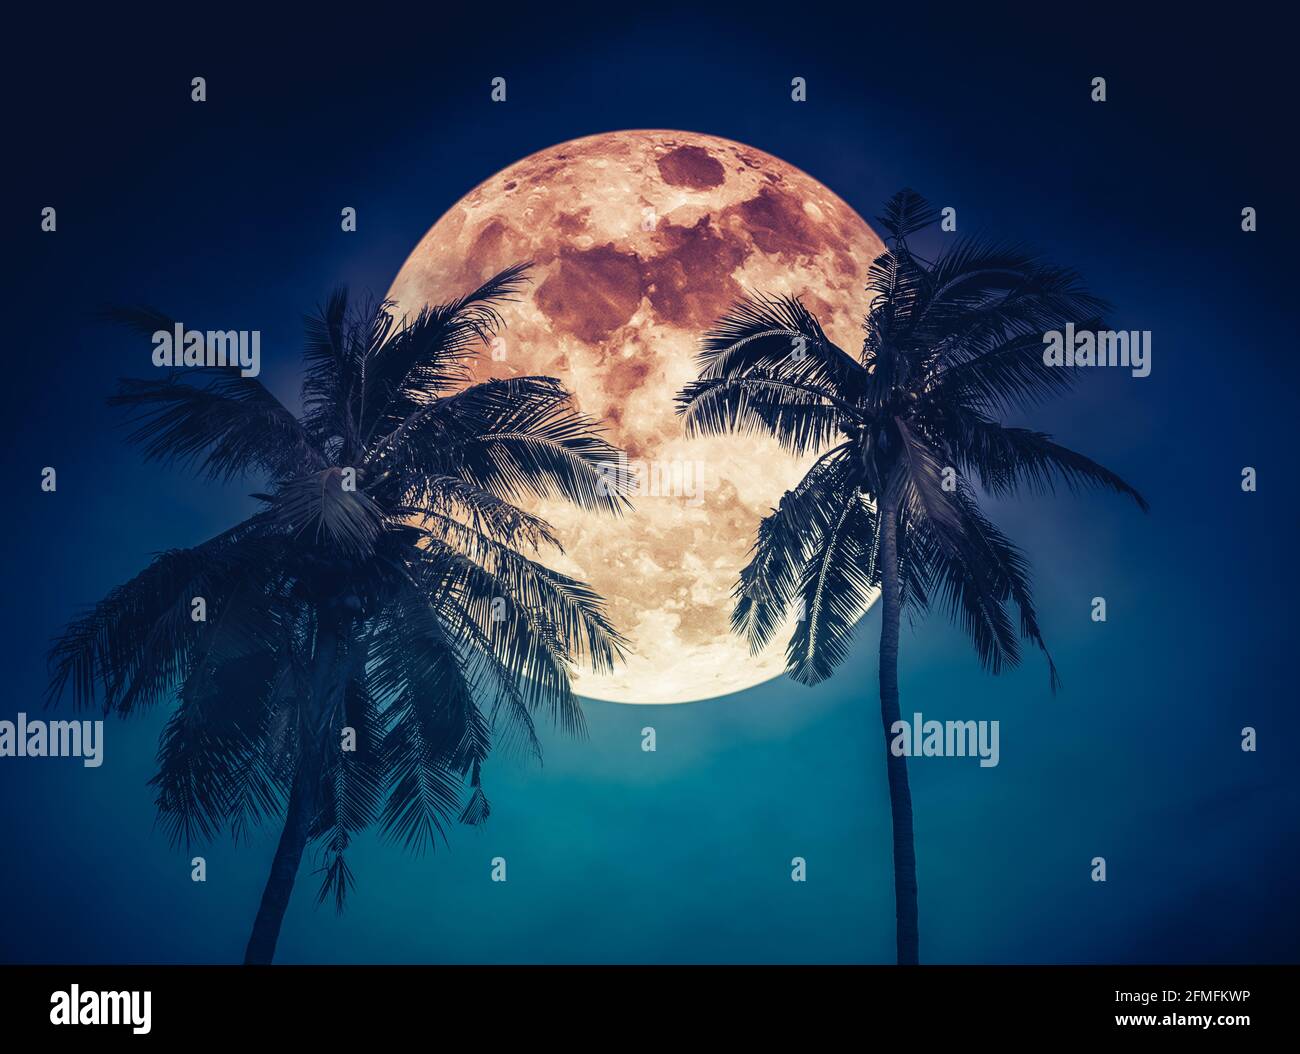 Luna roja o luna de sangre. Hermoso paisaje nocturno de cielo azul con súper luna detrás de la palma de coco. Serenidad naturaleza fondo. La luna tomada con mi Foto de stock